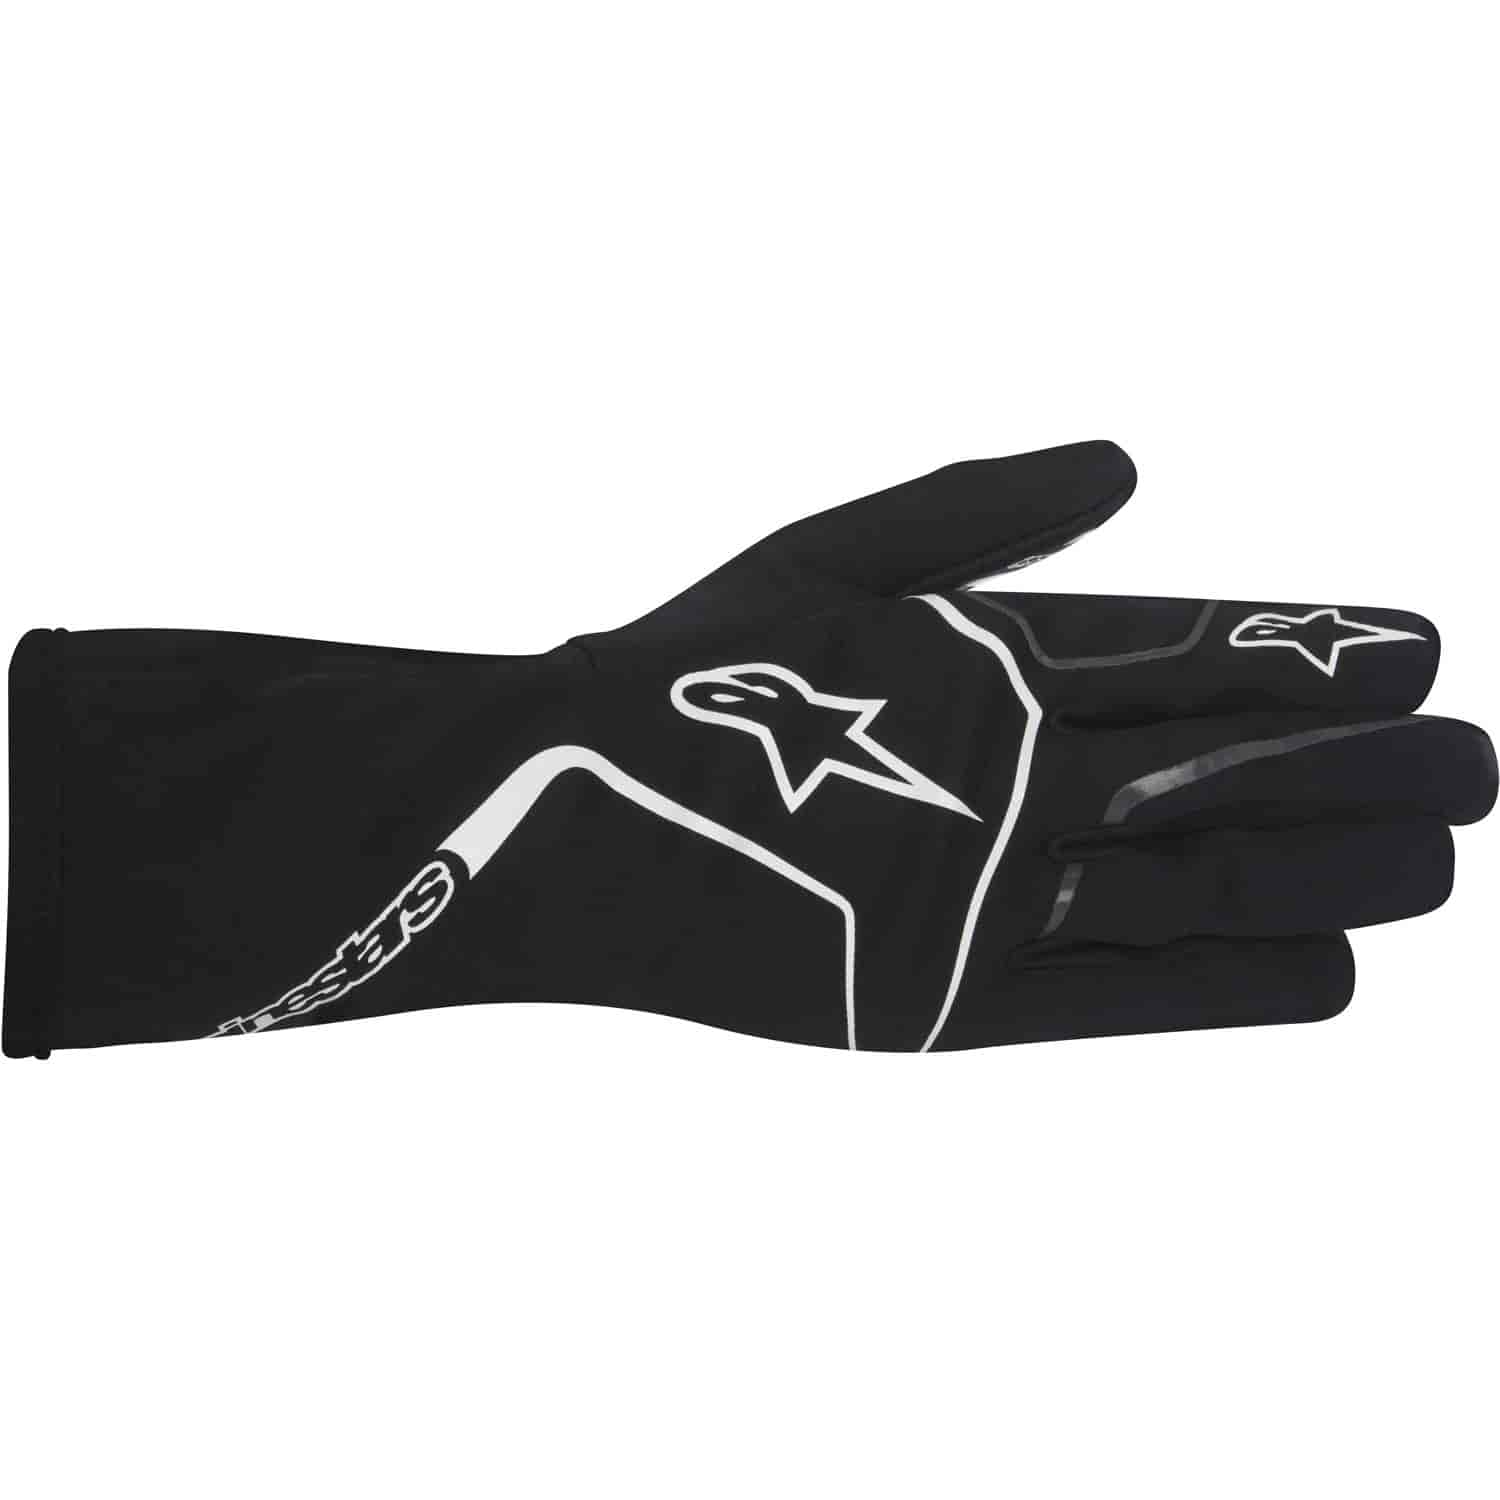 Tech 1-K Race Gloves Black/White